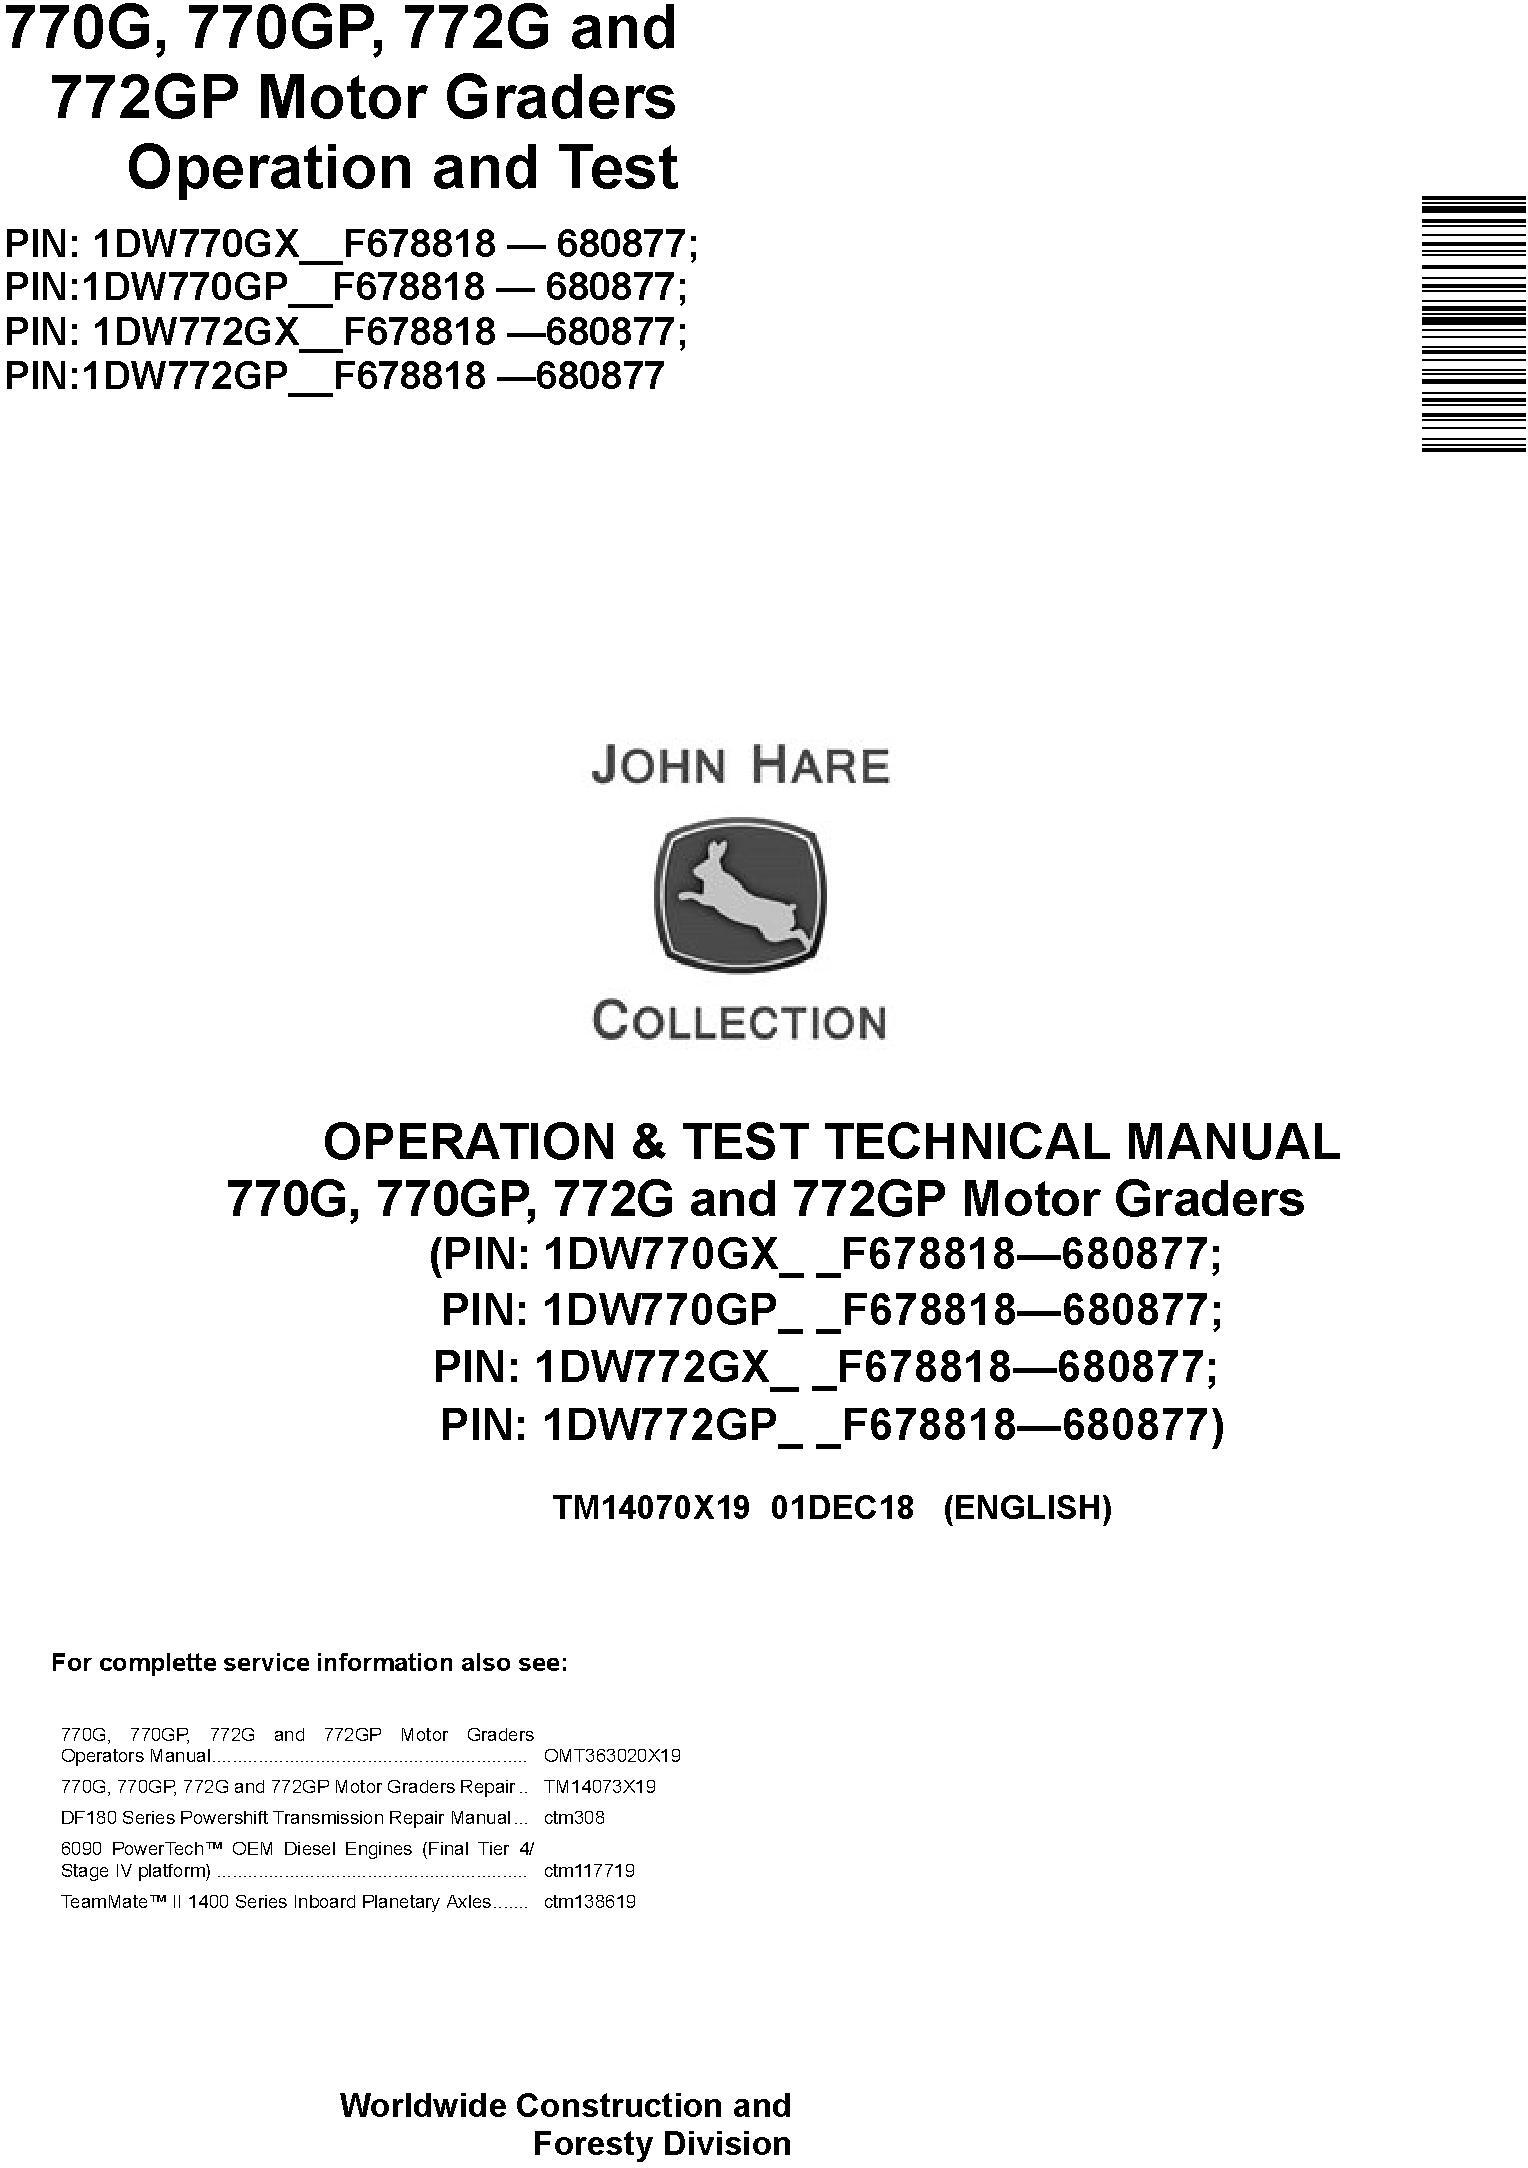 John Deere 770G, 770GP, 772G, 772GP (SN.F678818-680877) Motor Graders Diagnostic Manual (TM14070X19) - 18991